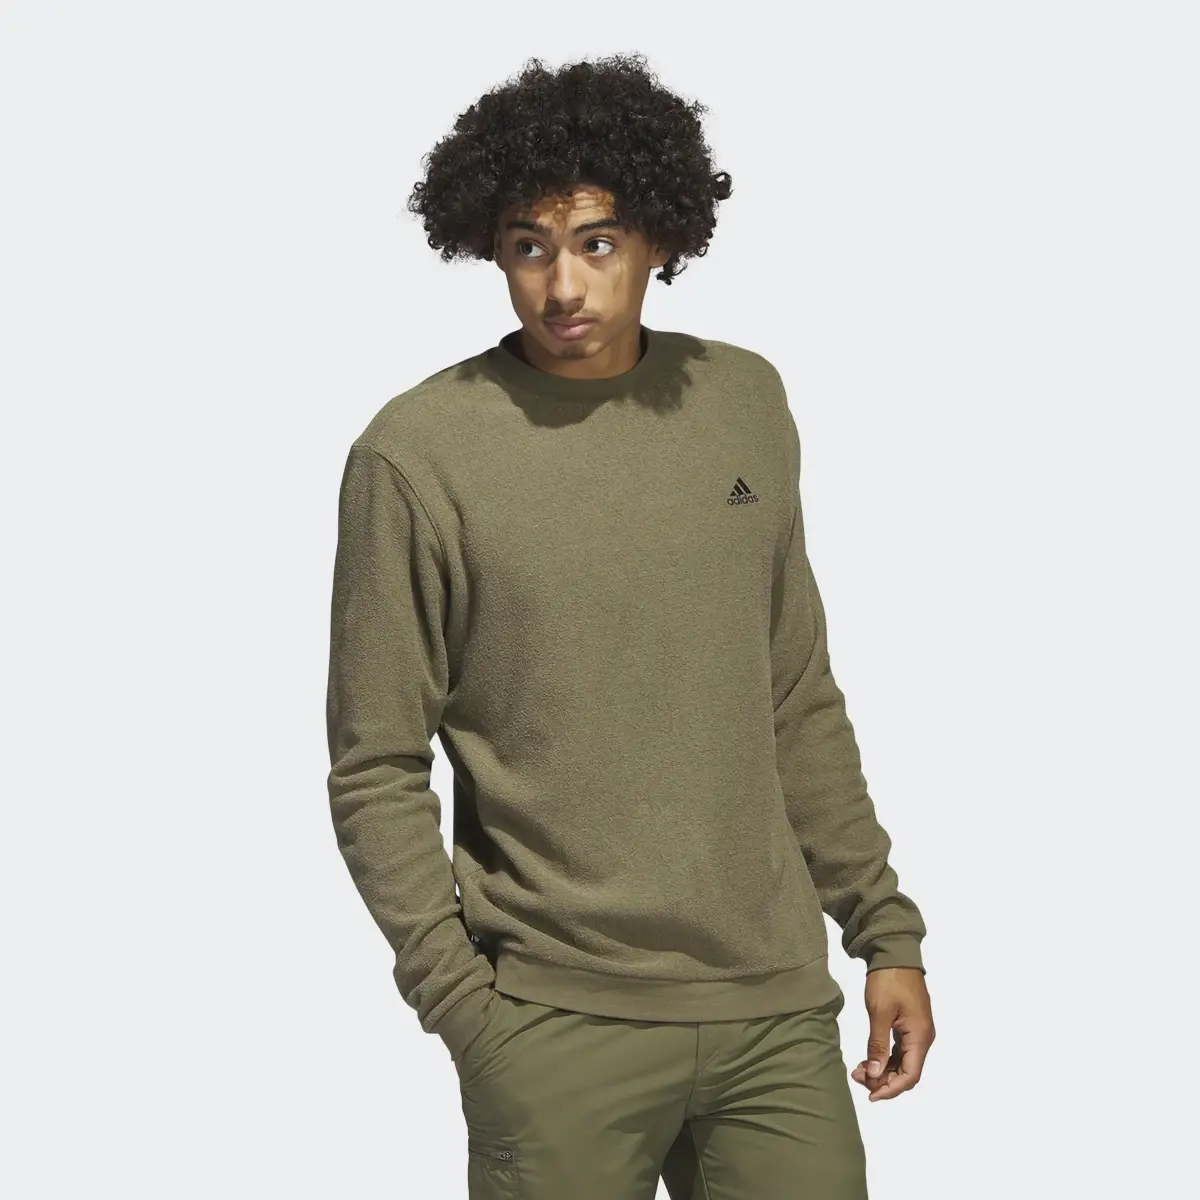 Adidas Core Sweatshirt. 2